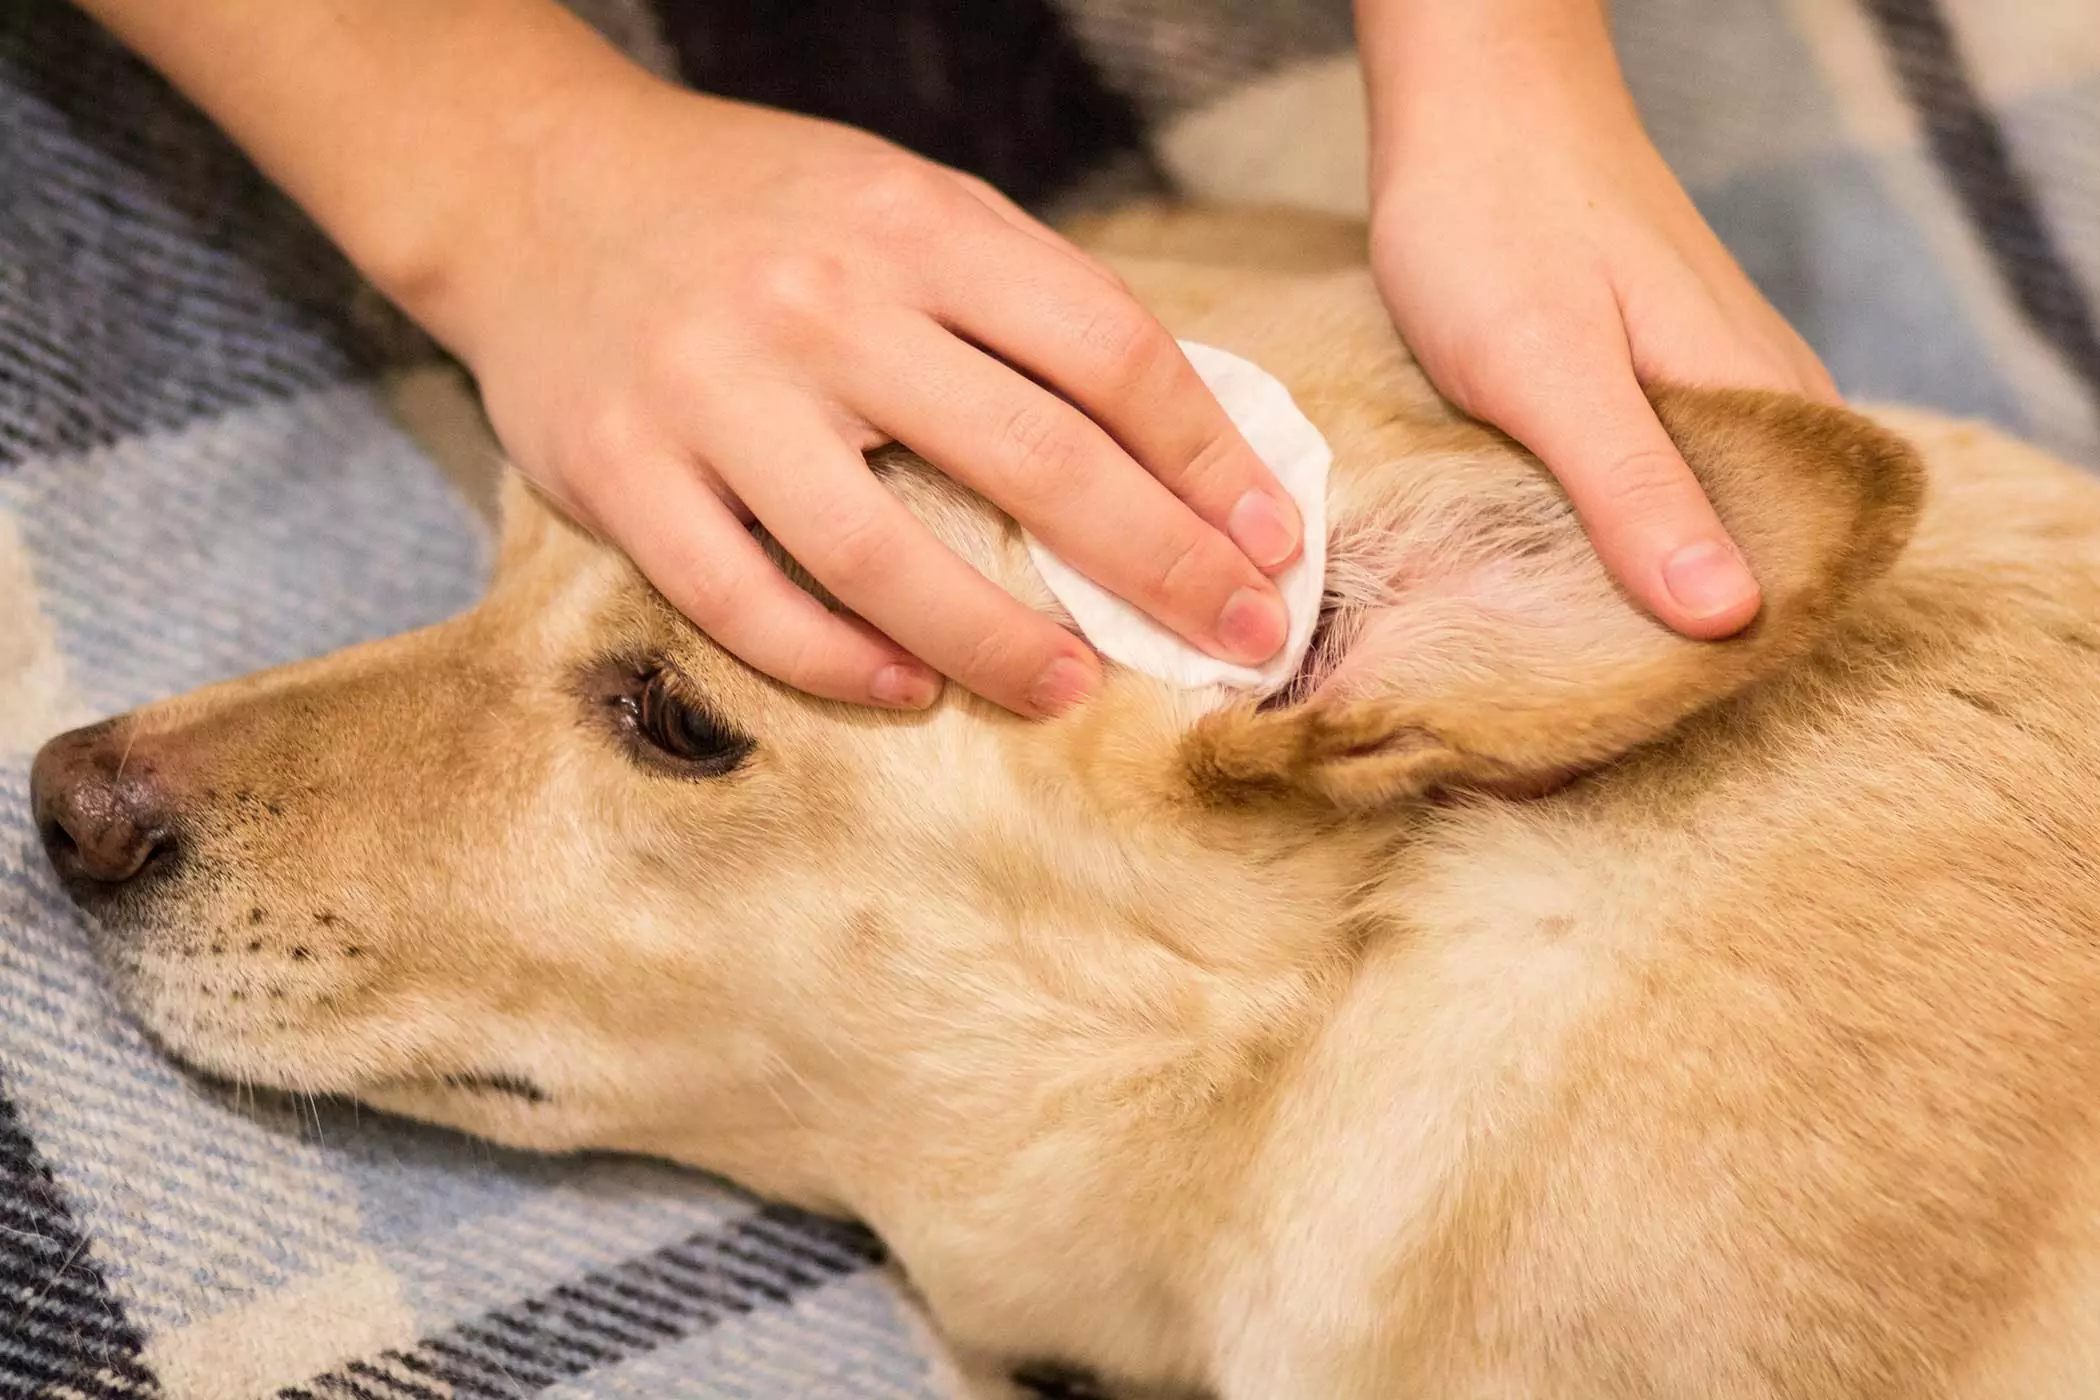 Comment nettoyer les oreilles de votre chien ? Alors, comment nettoyer correctement le conduit auditif de votre chien ?